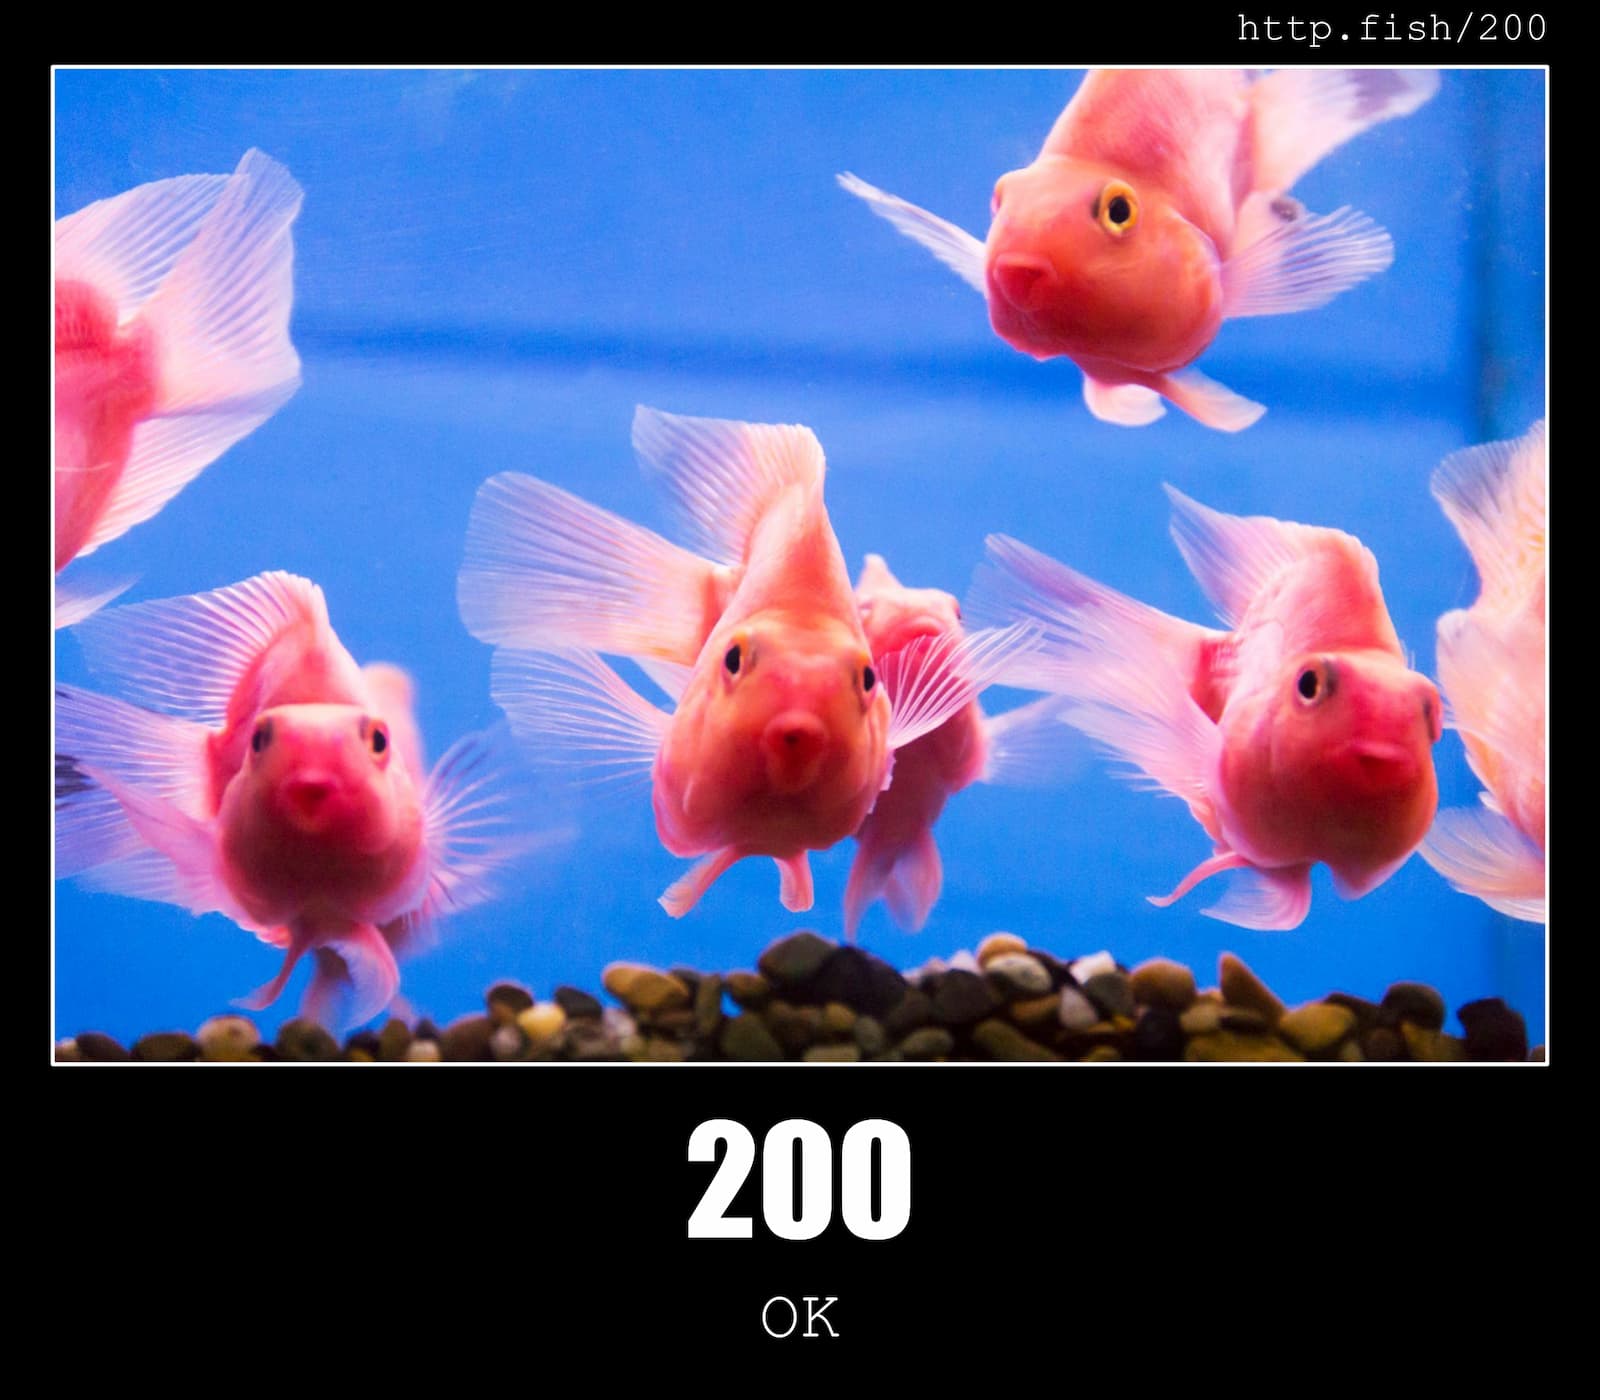 HTTP Status Code 200 OK & Fish